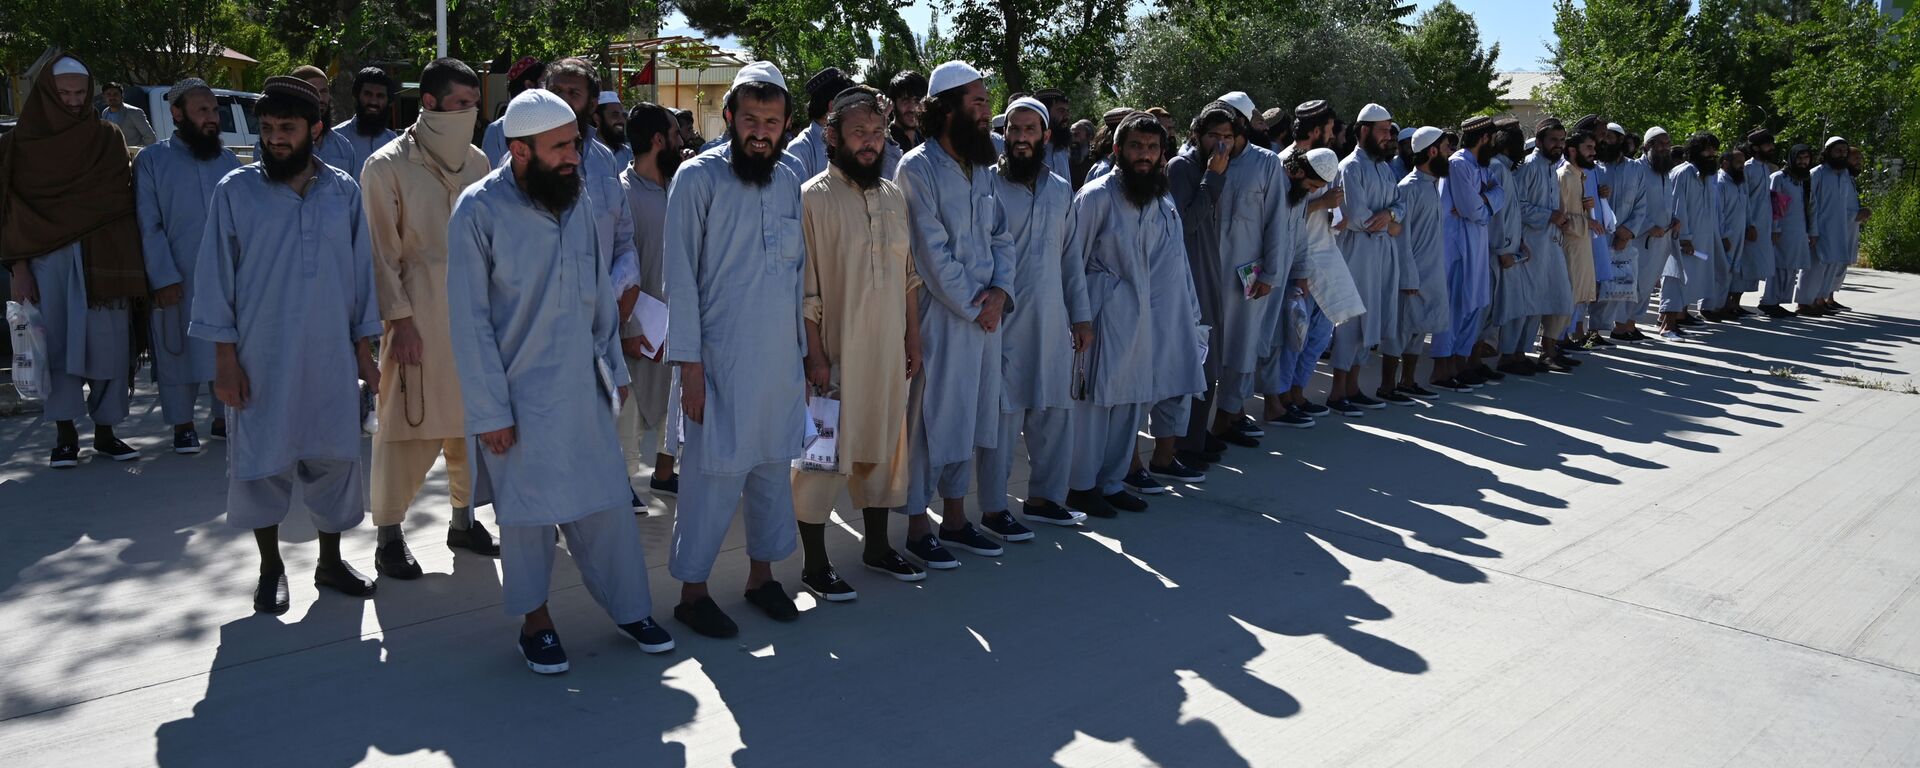 Заключенные талибы во время их освобождения из тюрьмы Баграм, Афганистан - Sputnik Тоҷикистон, 1920, 30.03.2021